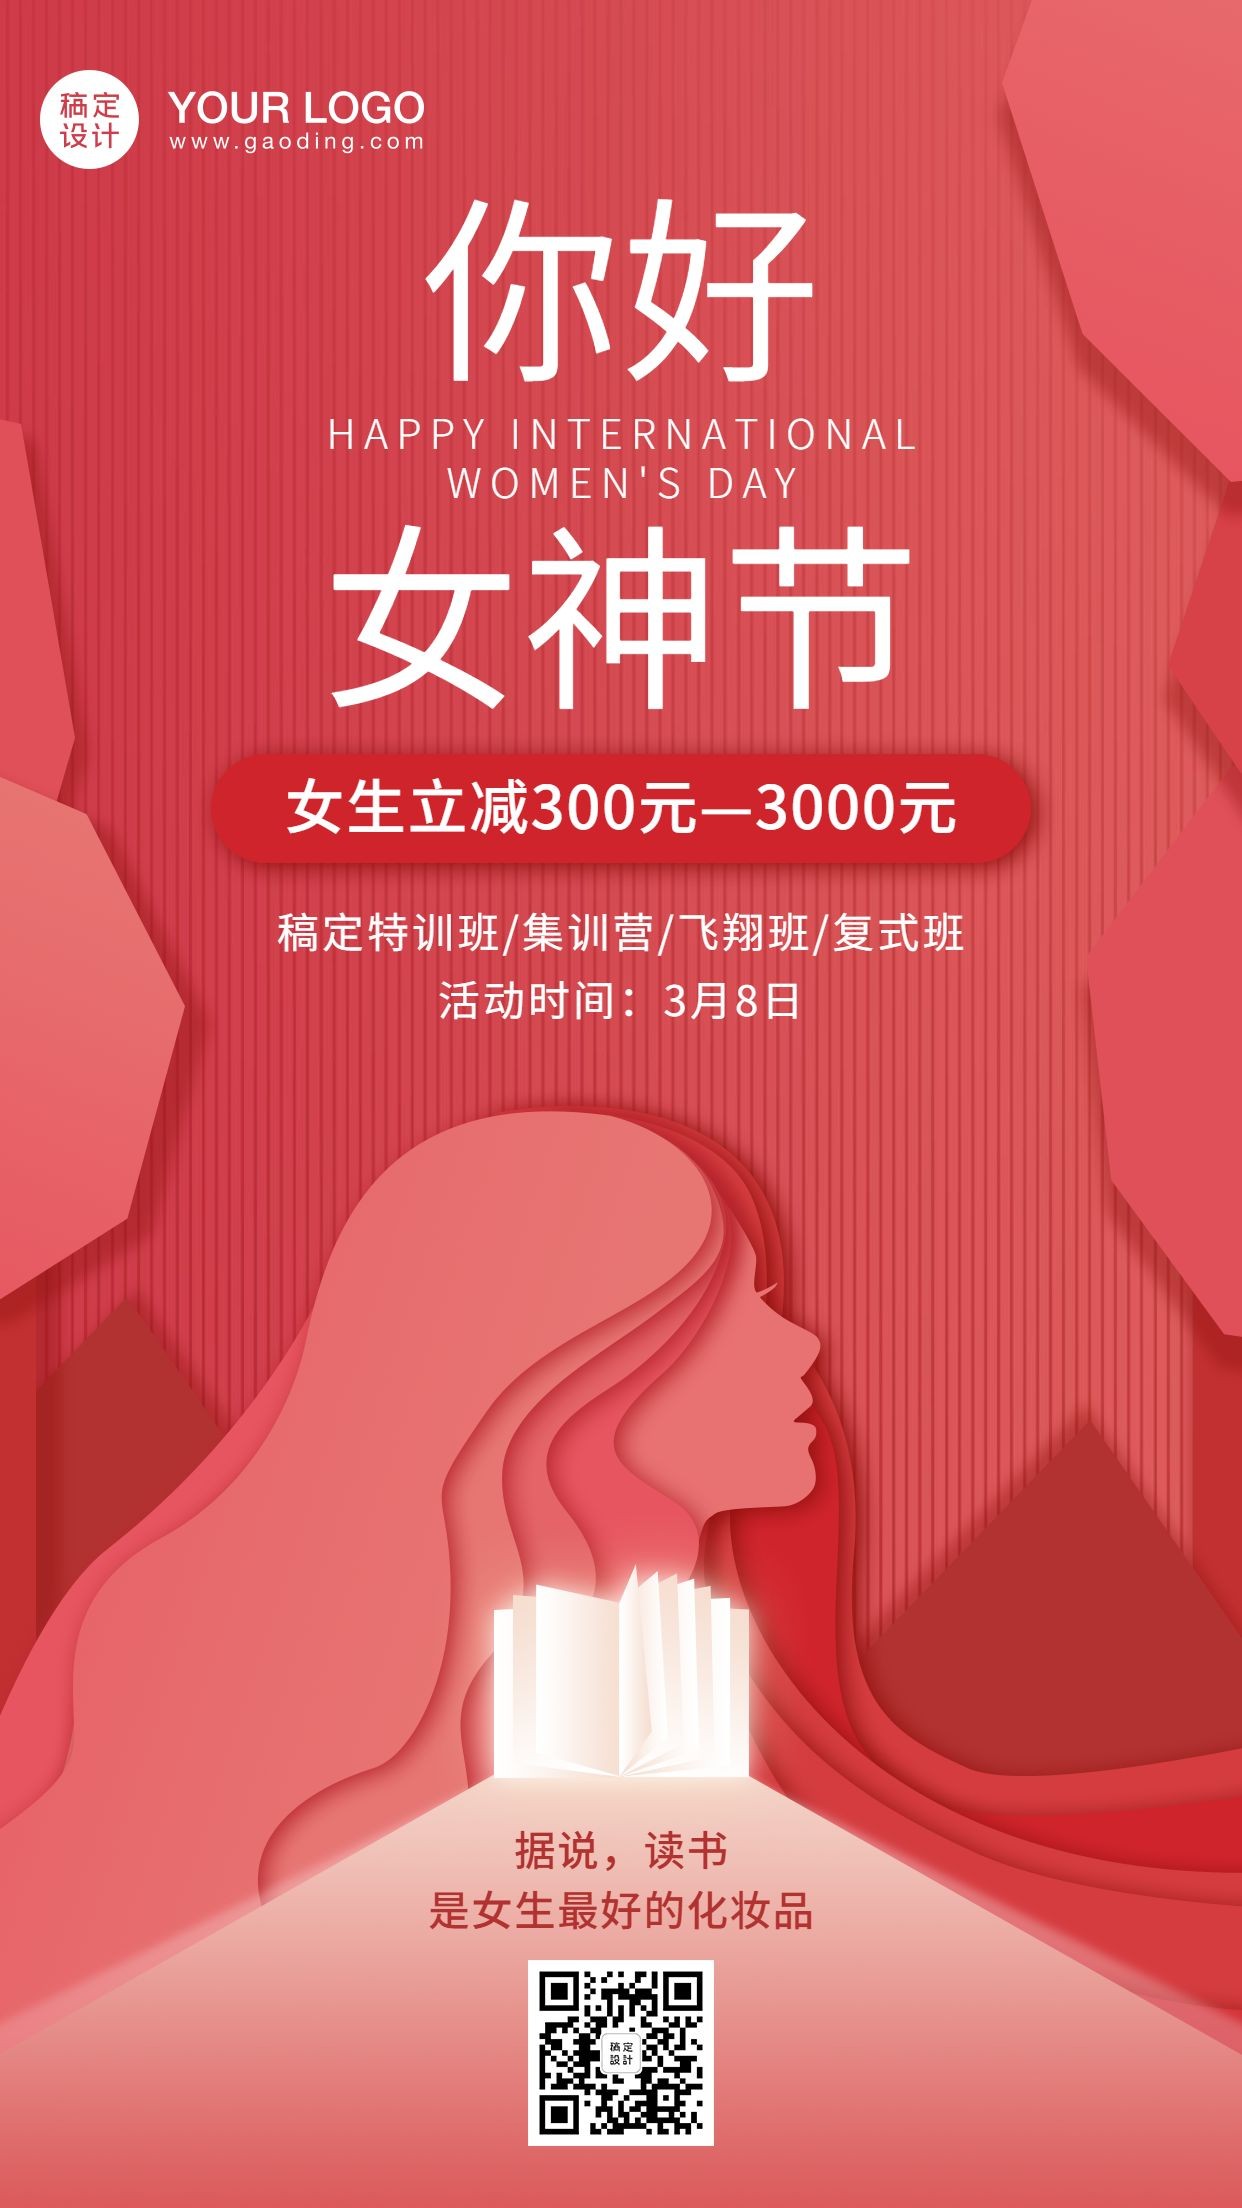 38妇女节女神节课程促销海报预览效果